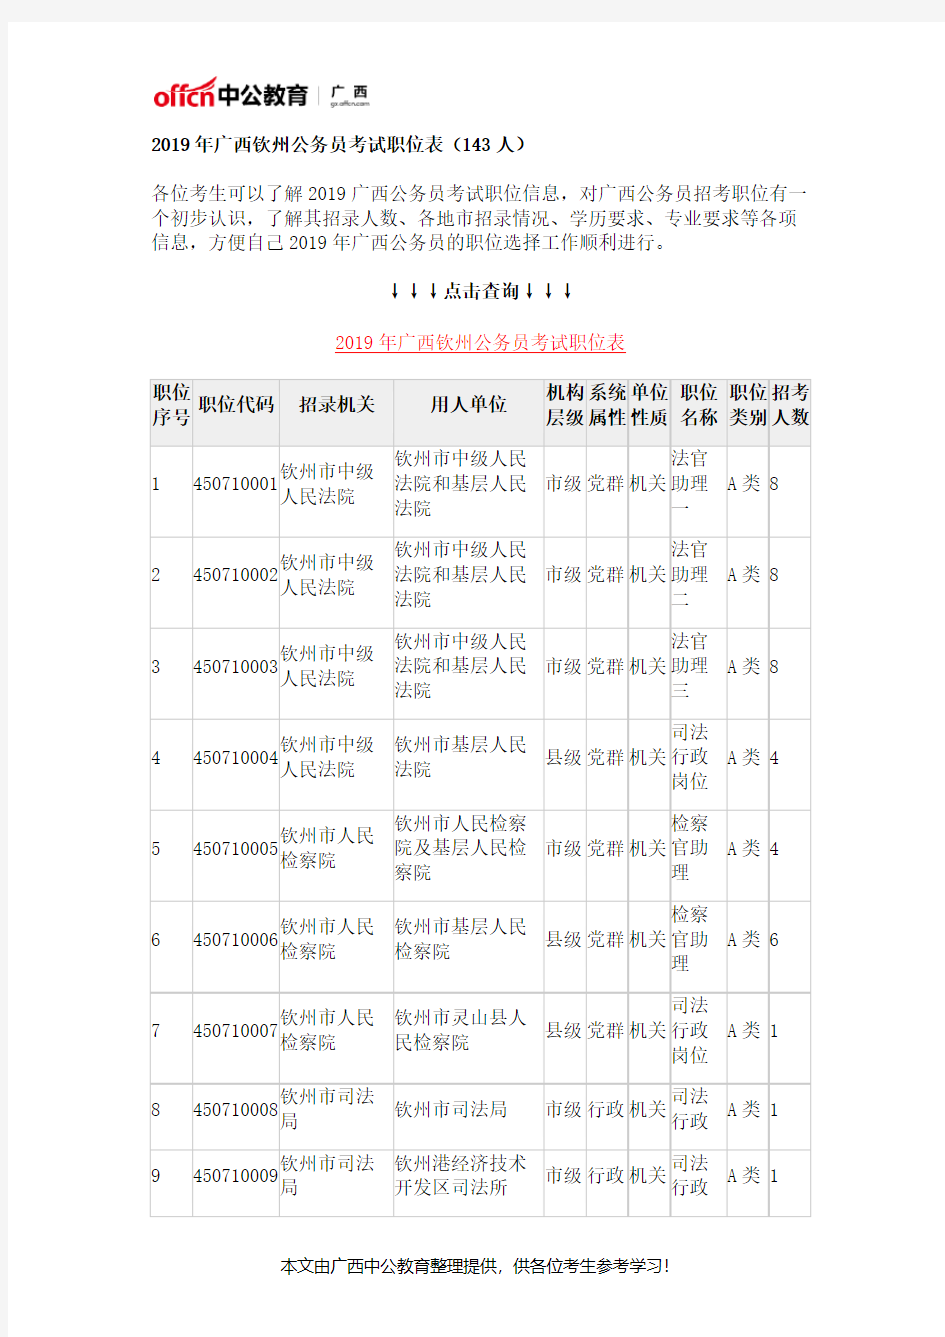 2019年广西钦州公务员考试职位表(143人)